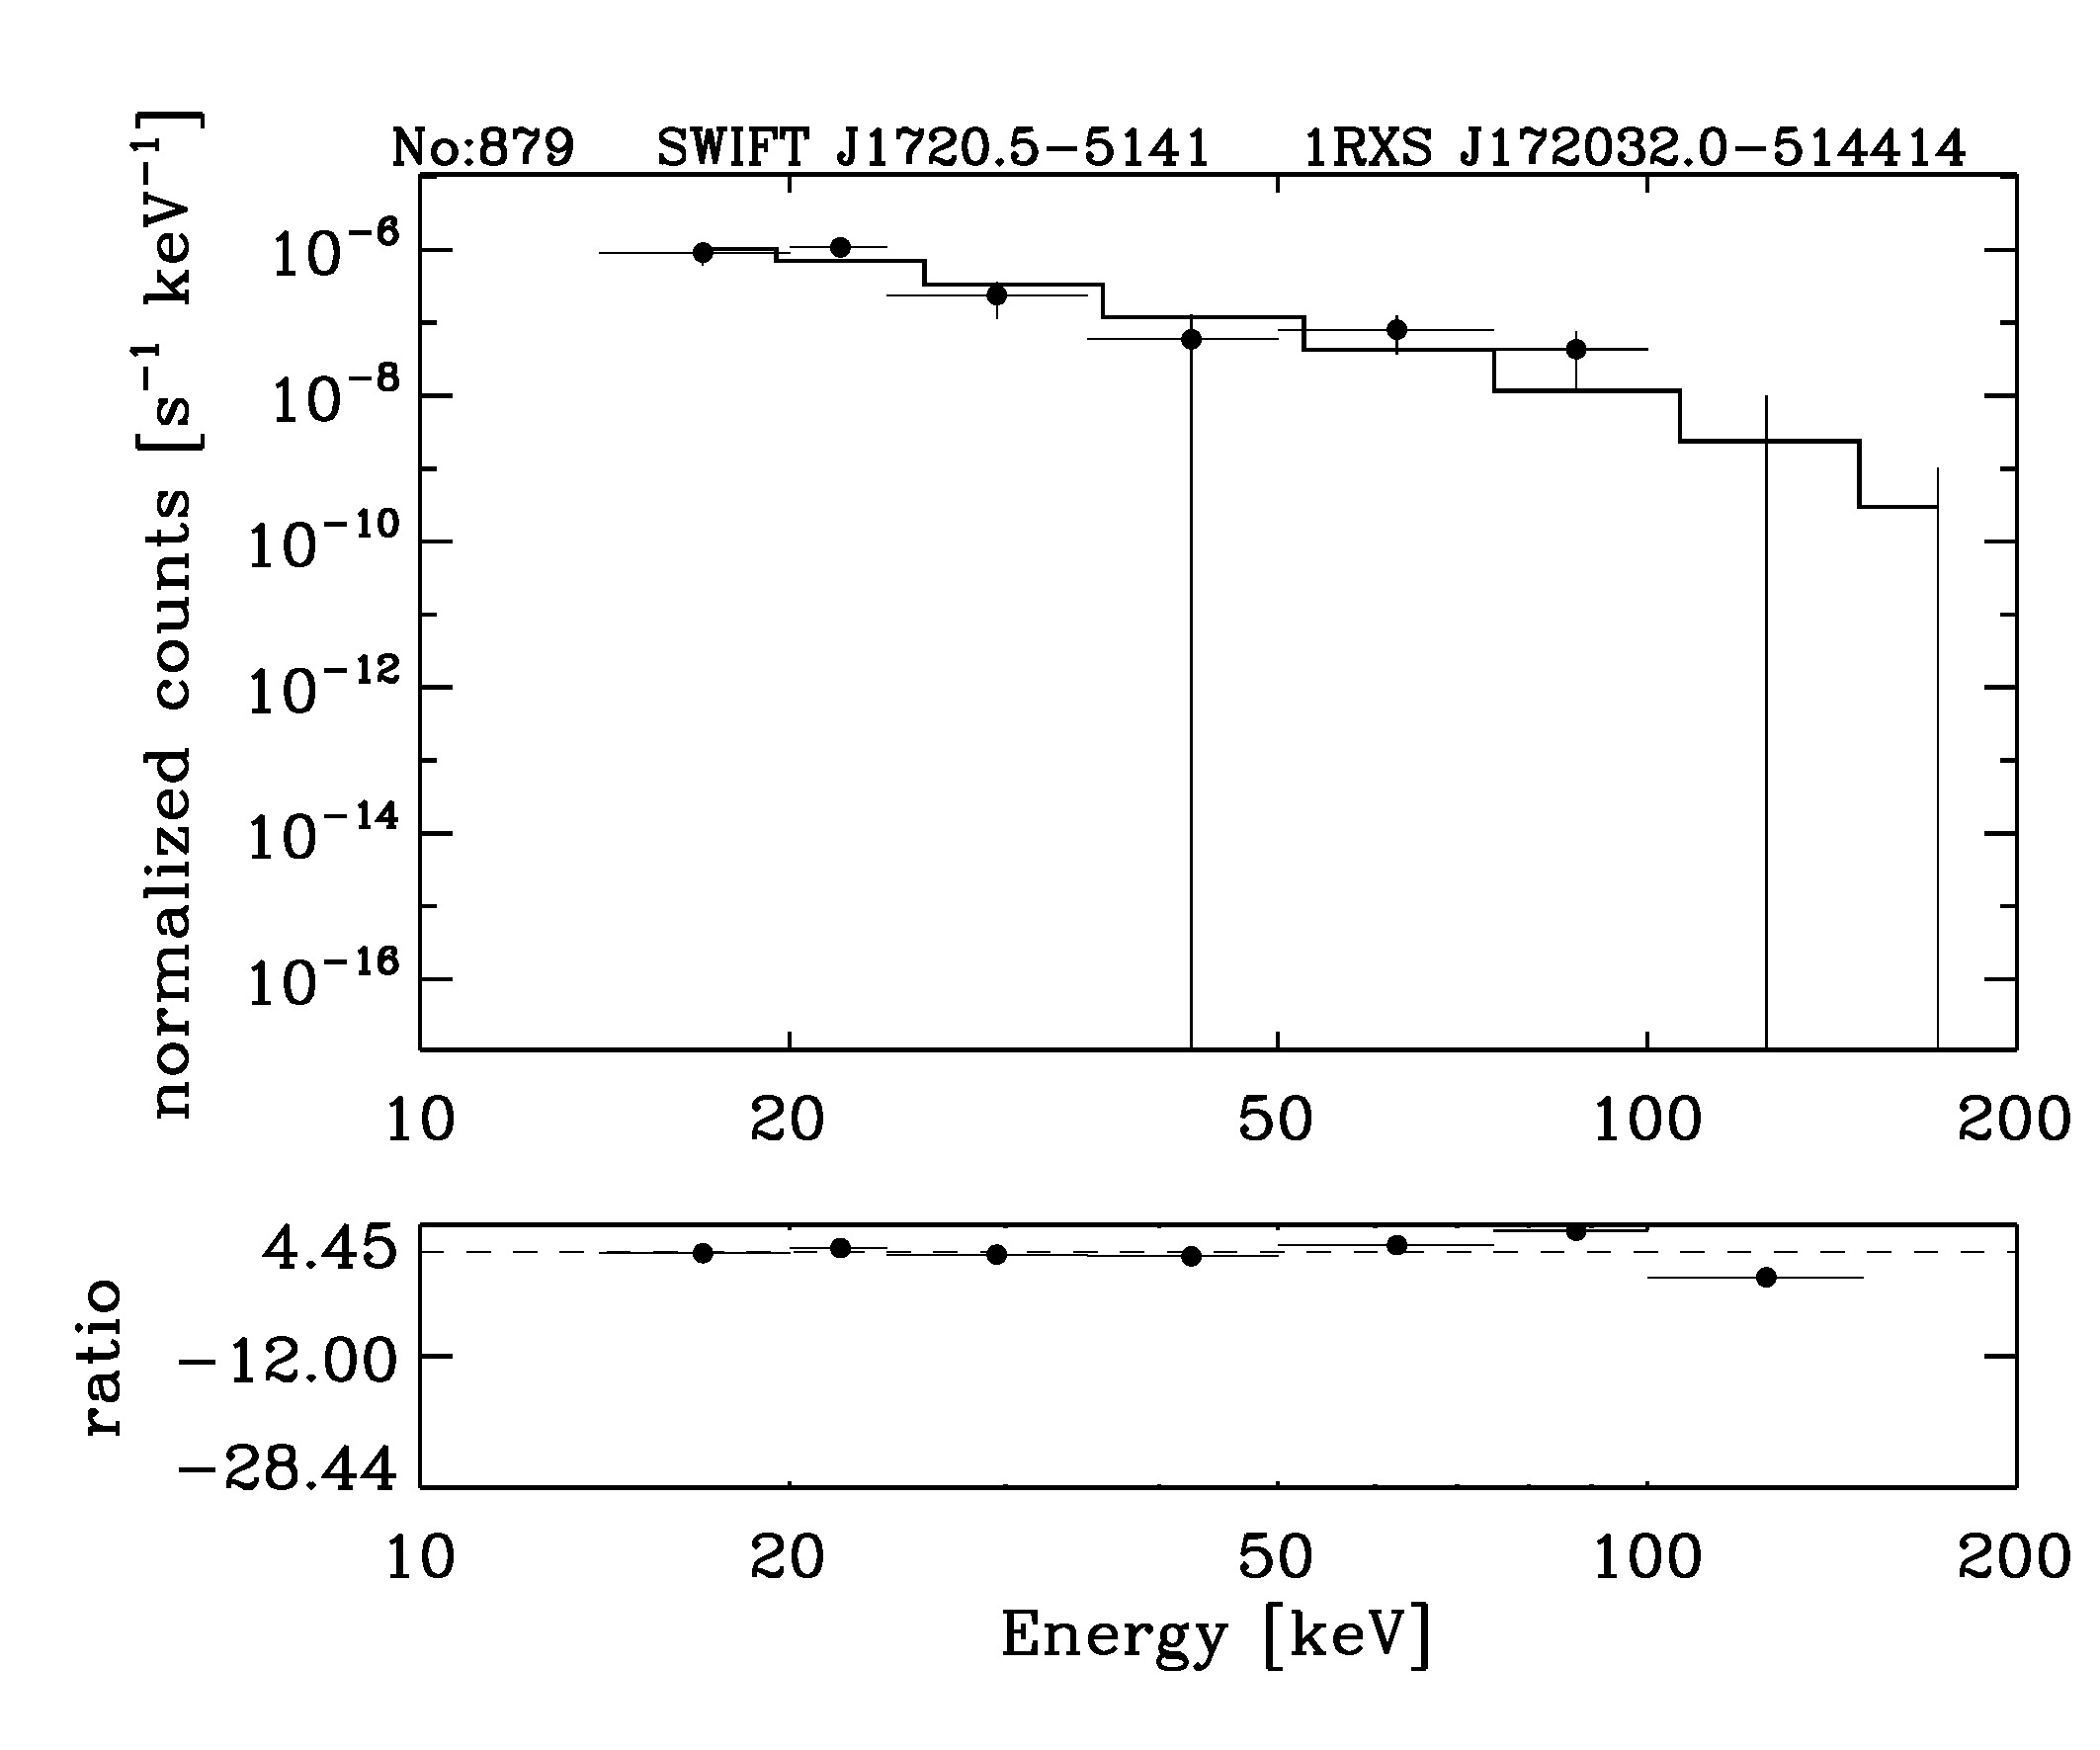 BAT Spectrum for SWIFT J1720.5-5141